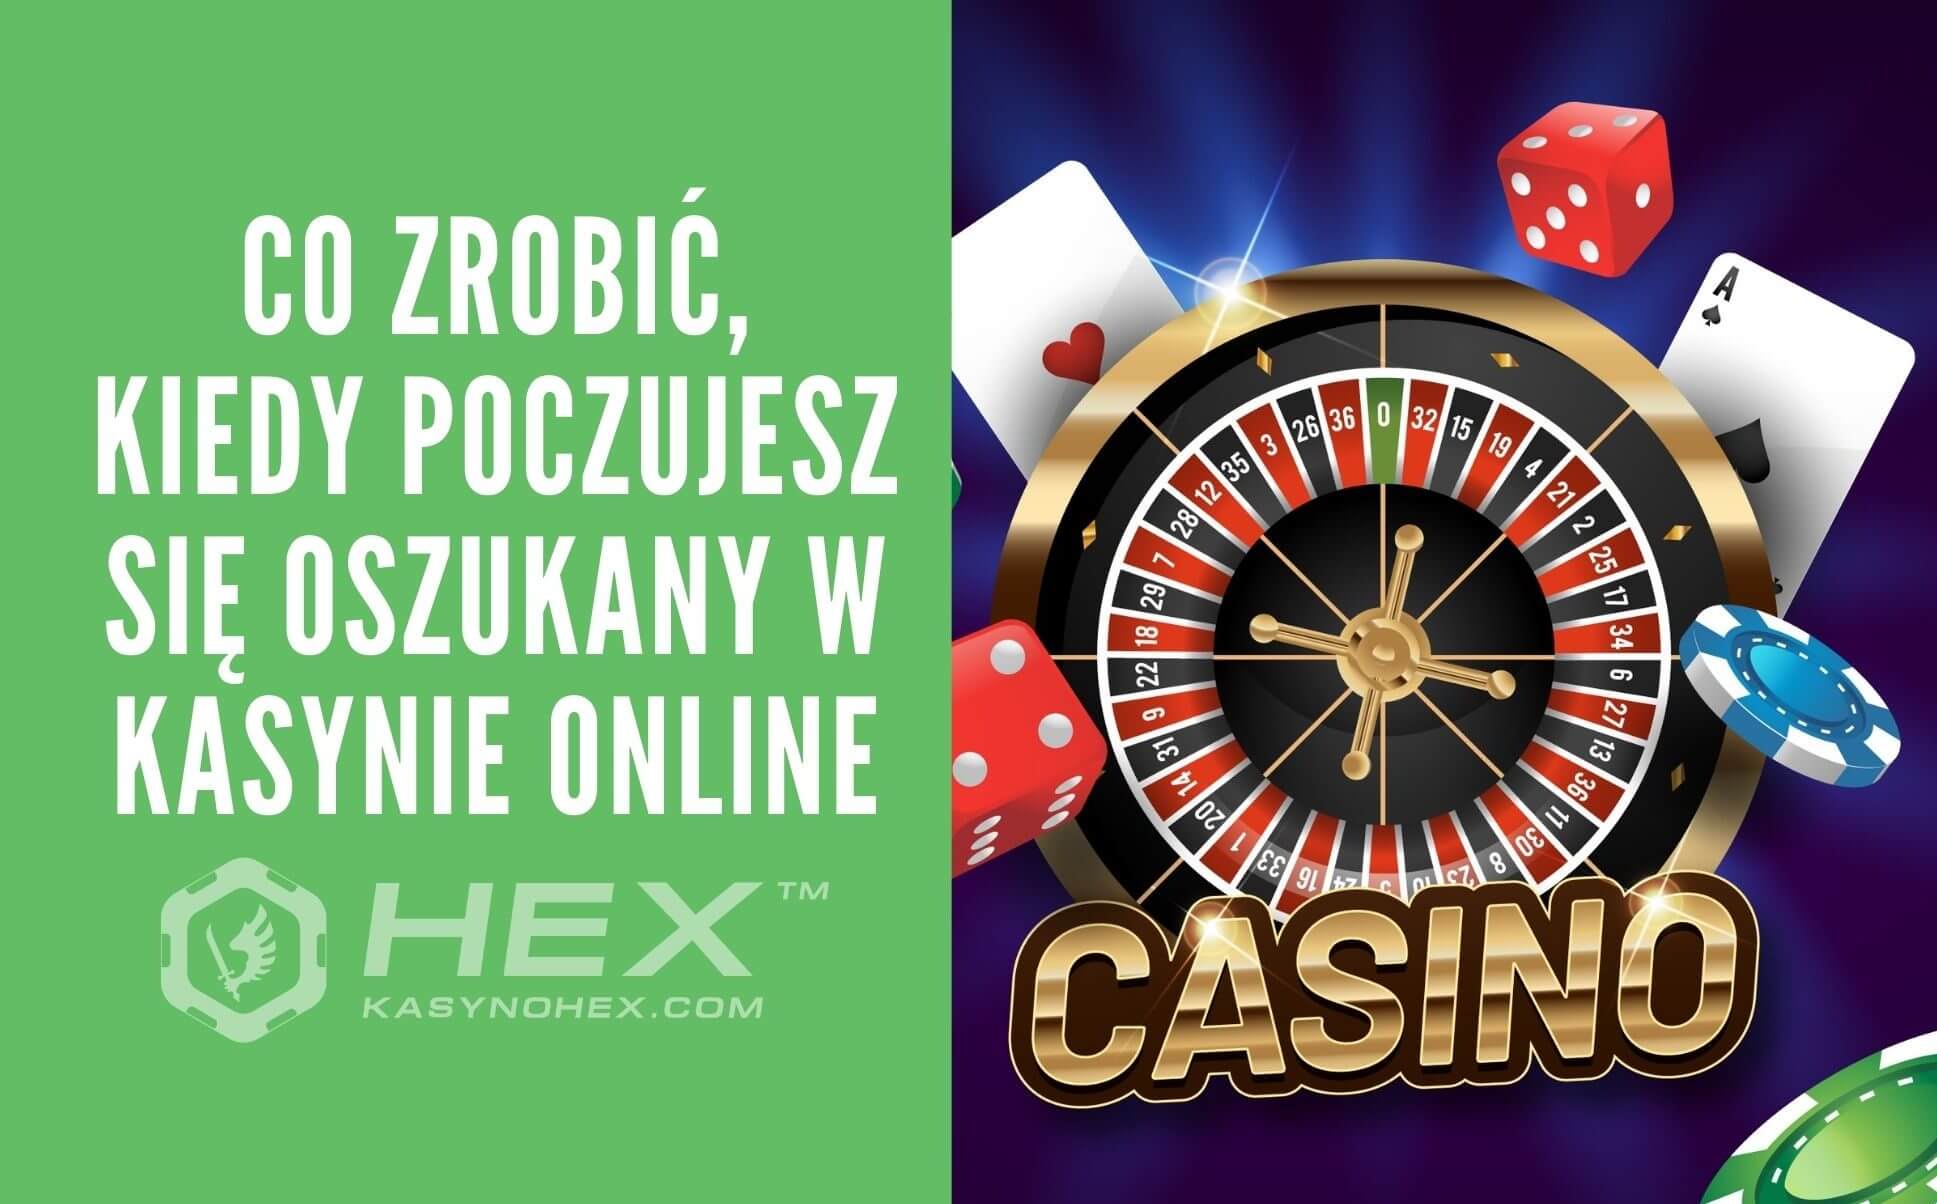 Rzeczy o casino online polska, których prawdopodobnie nie wziąłeś pod uwagę. I naprawdę powinienem